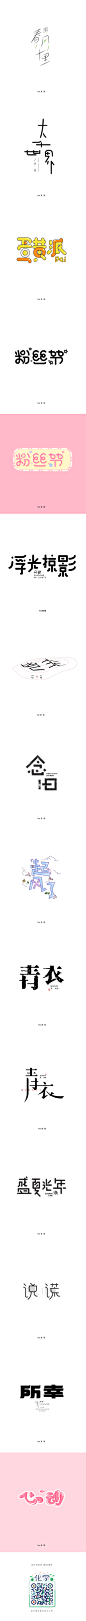 字体0707-字体传奇网-中国首个字体品牌设计师交流网